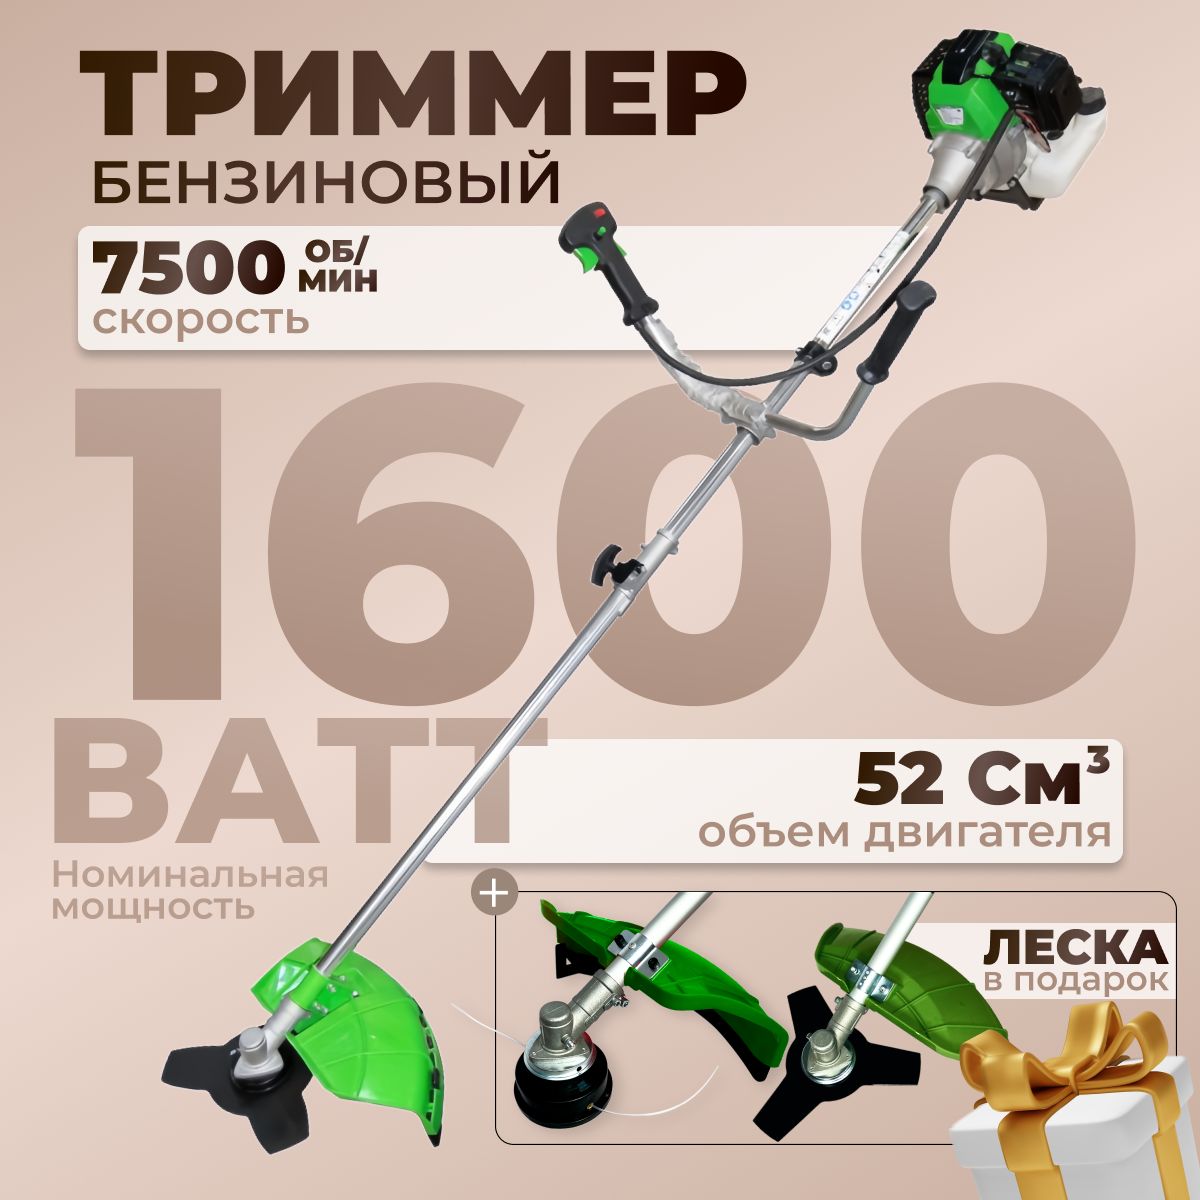 ТриммербензиновыйдлятравыECO-52/1600Вт,7500об/мин,нож3Т,52см